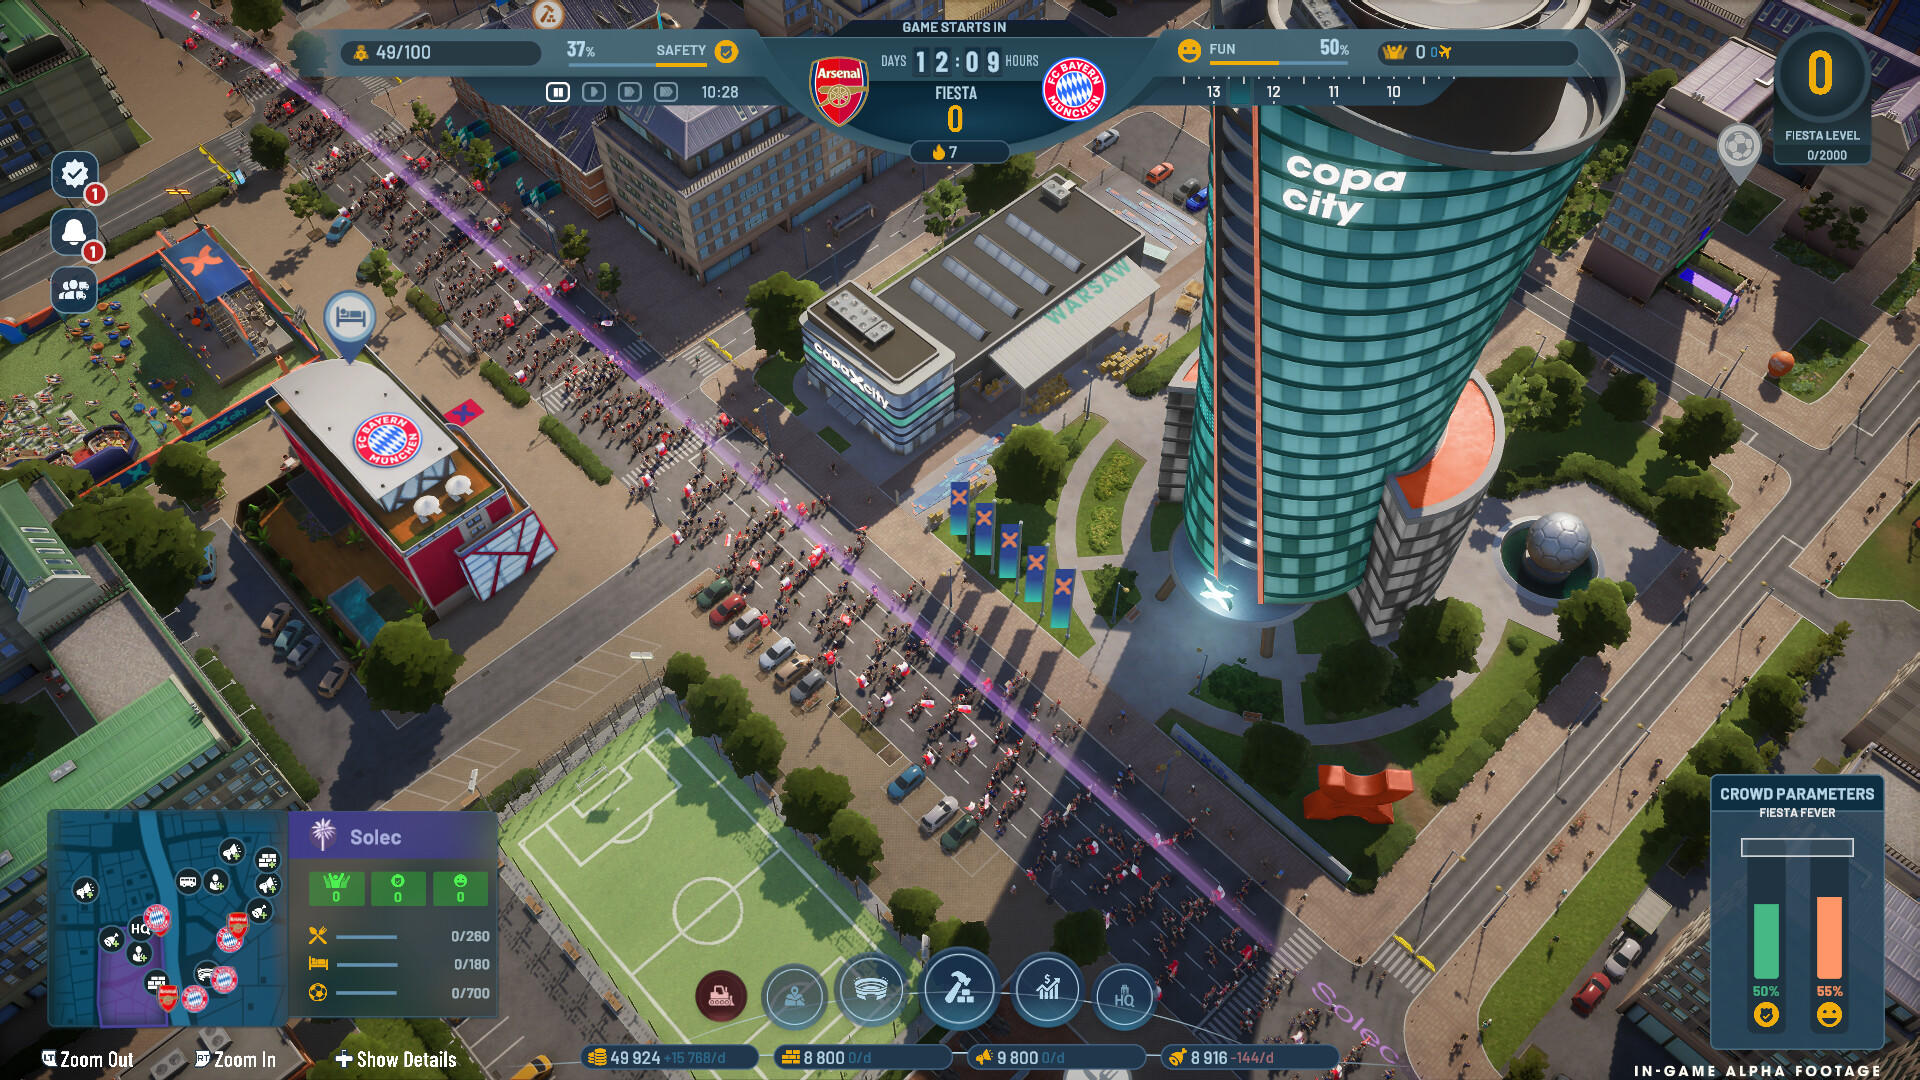 COPA CITY 게임 스크린 샷